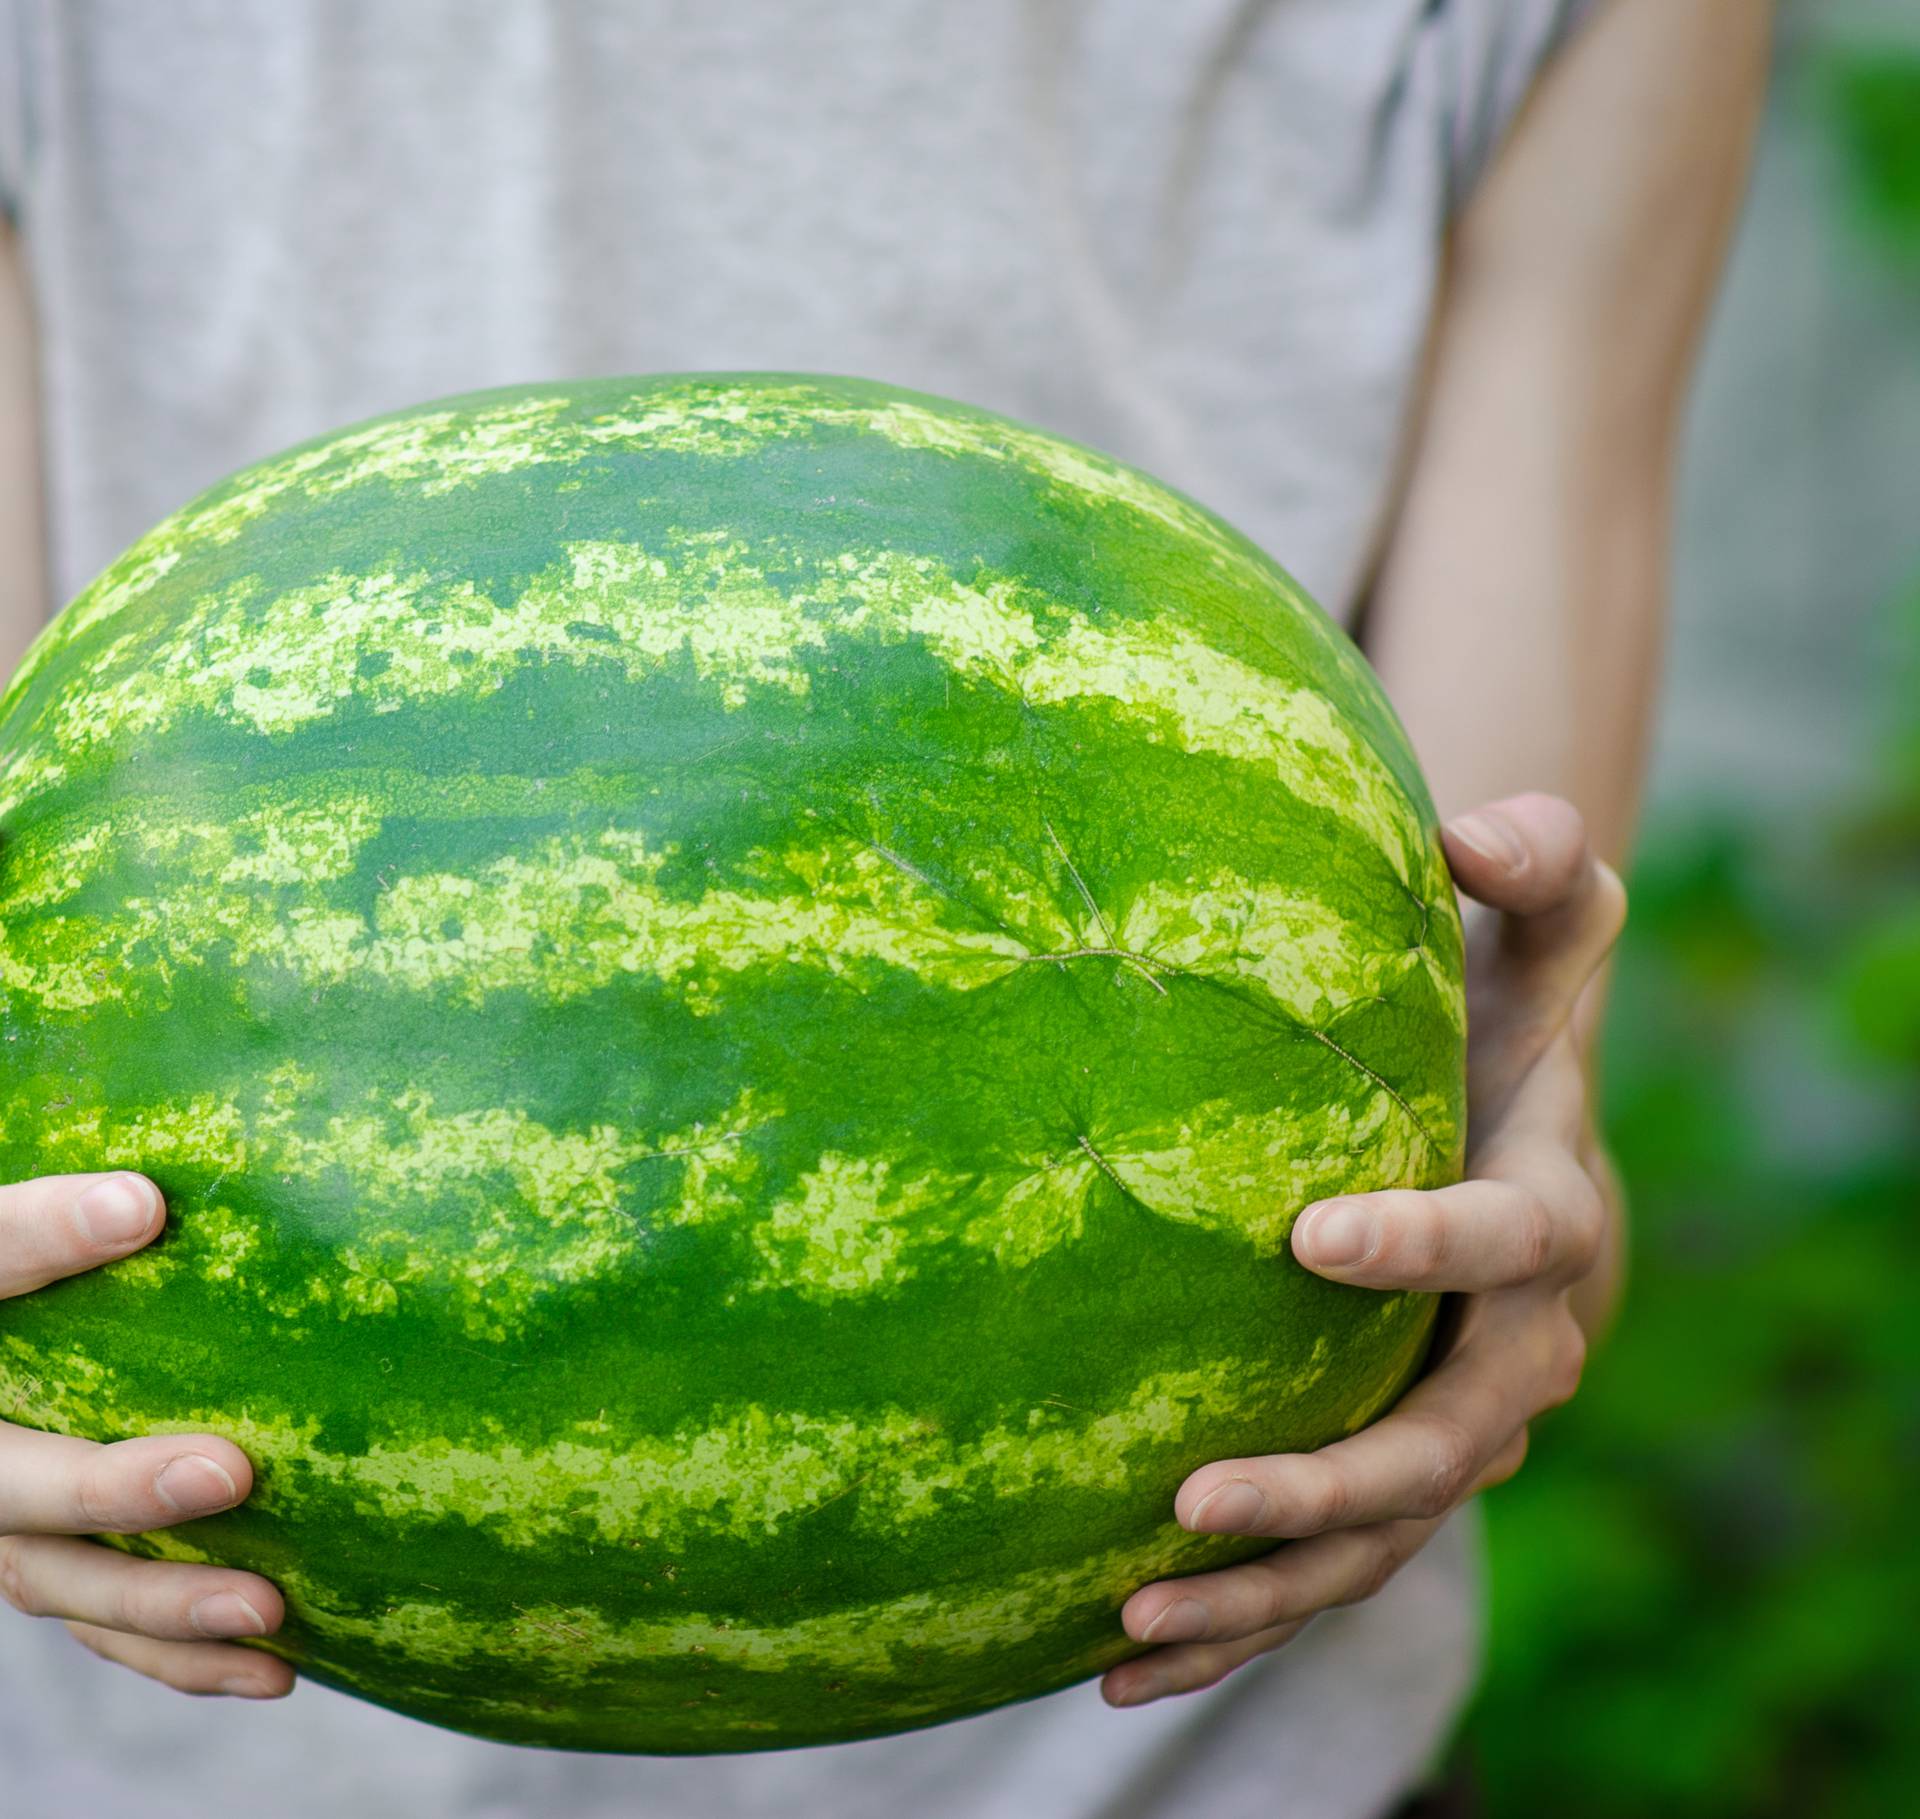 Prepoznajte savršenu lubenicu - obratite pažnju na 8 znakova